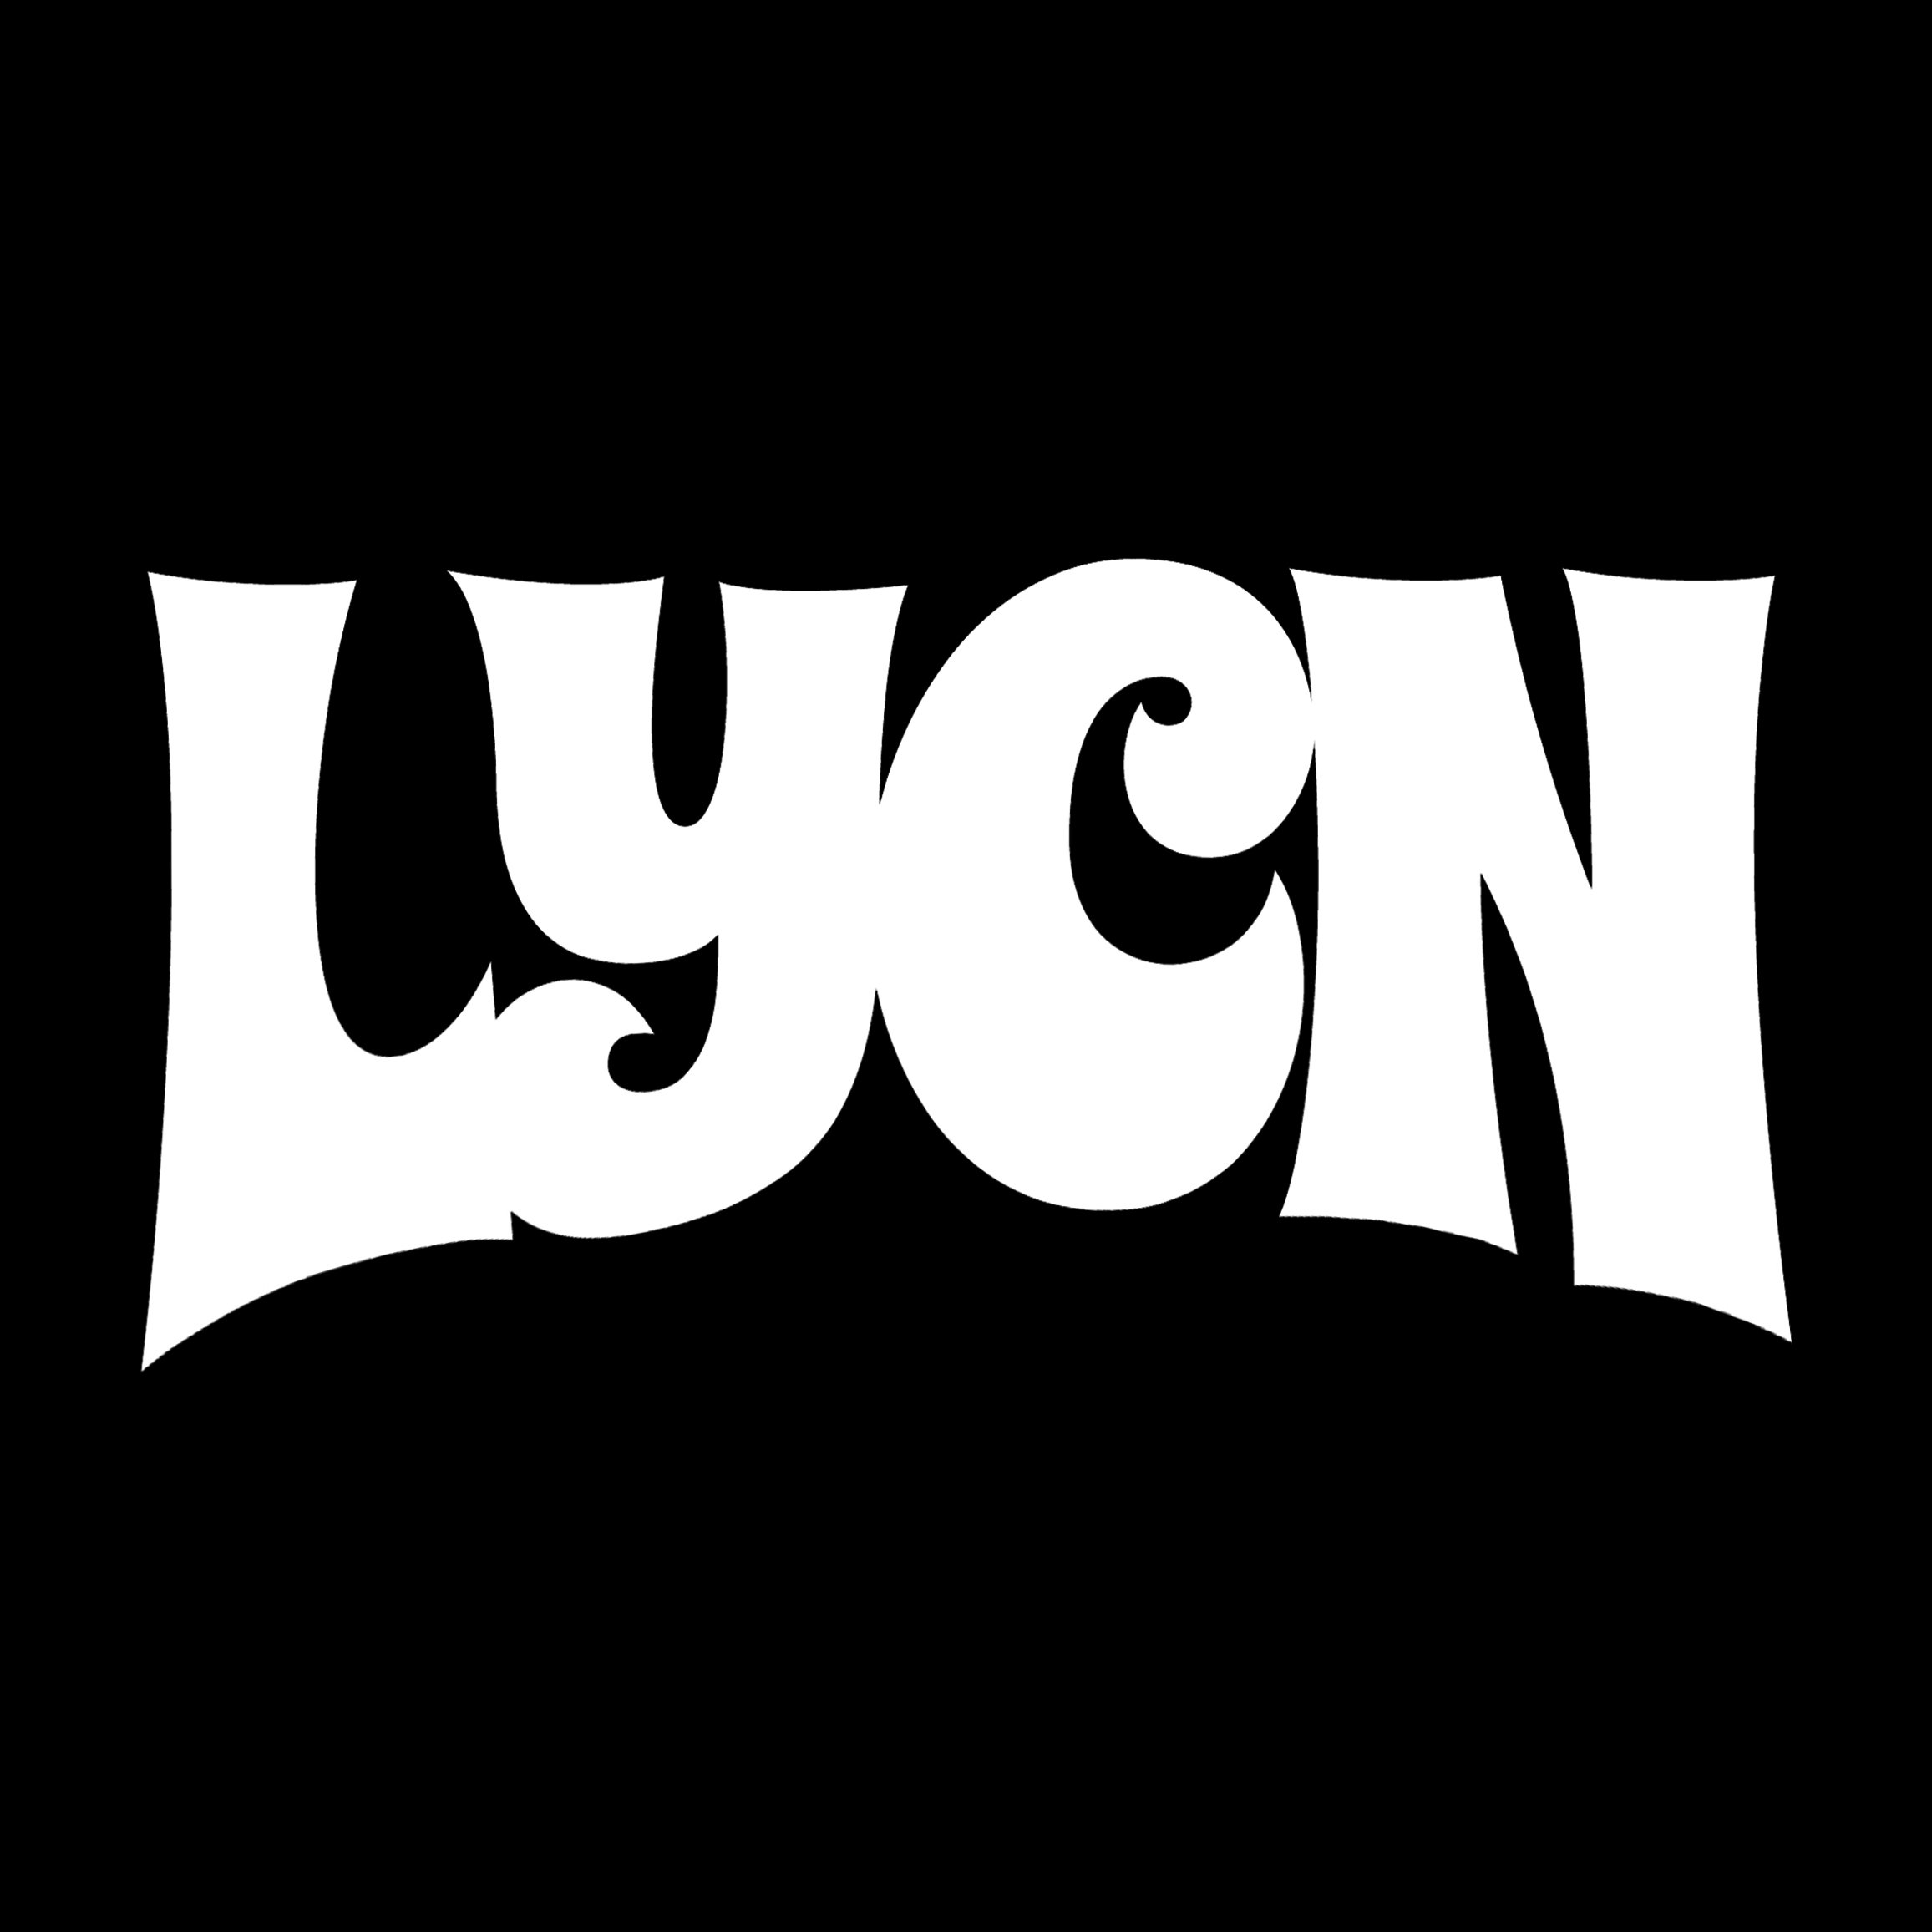 Lycn (Lay:kèn)